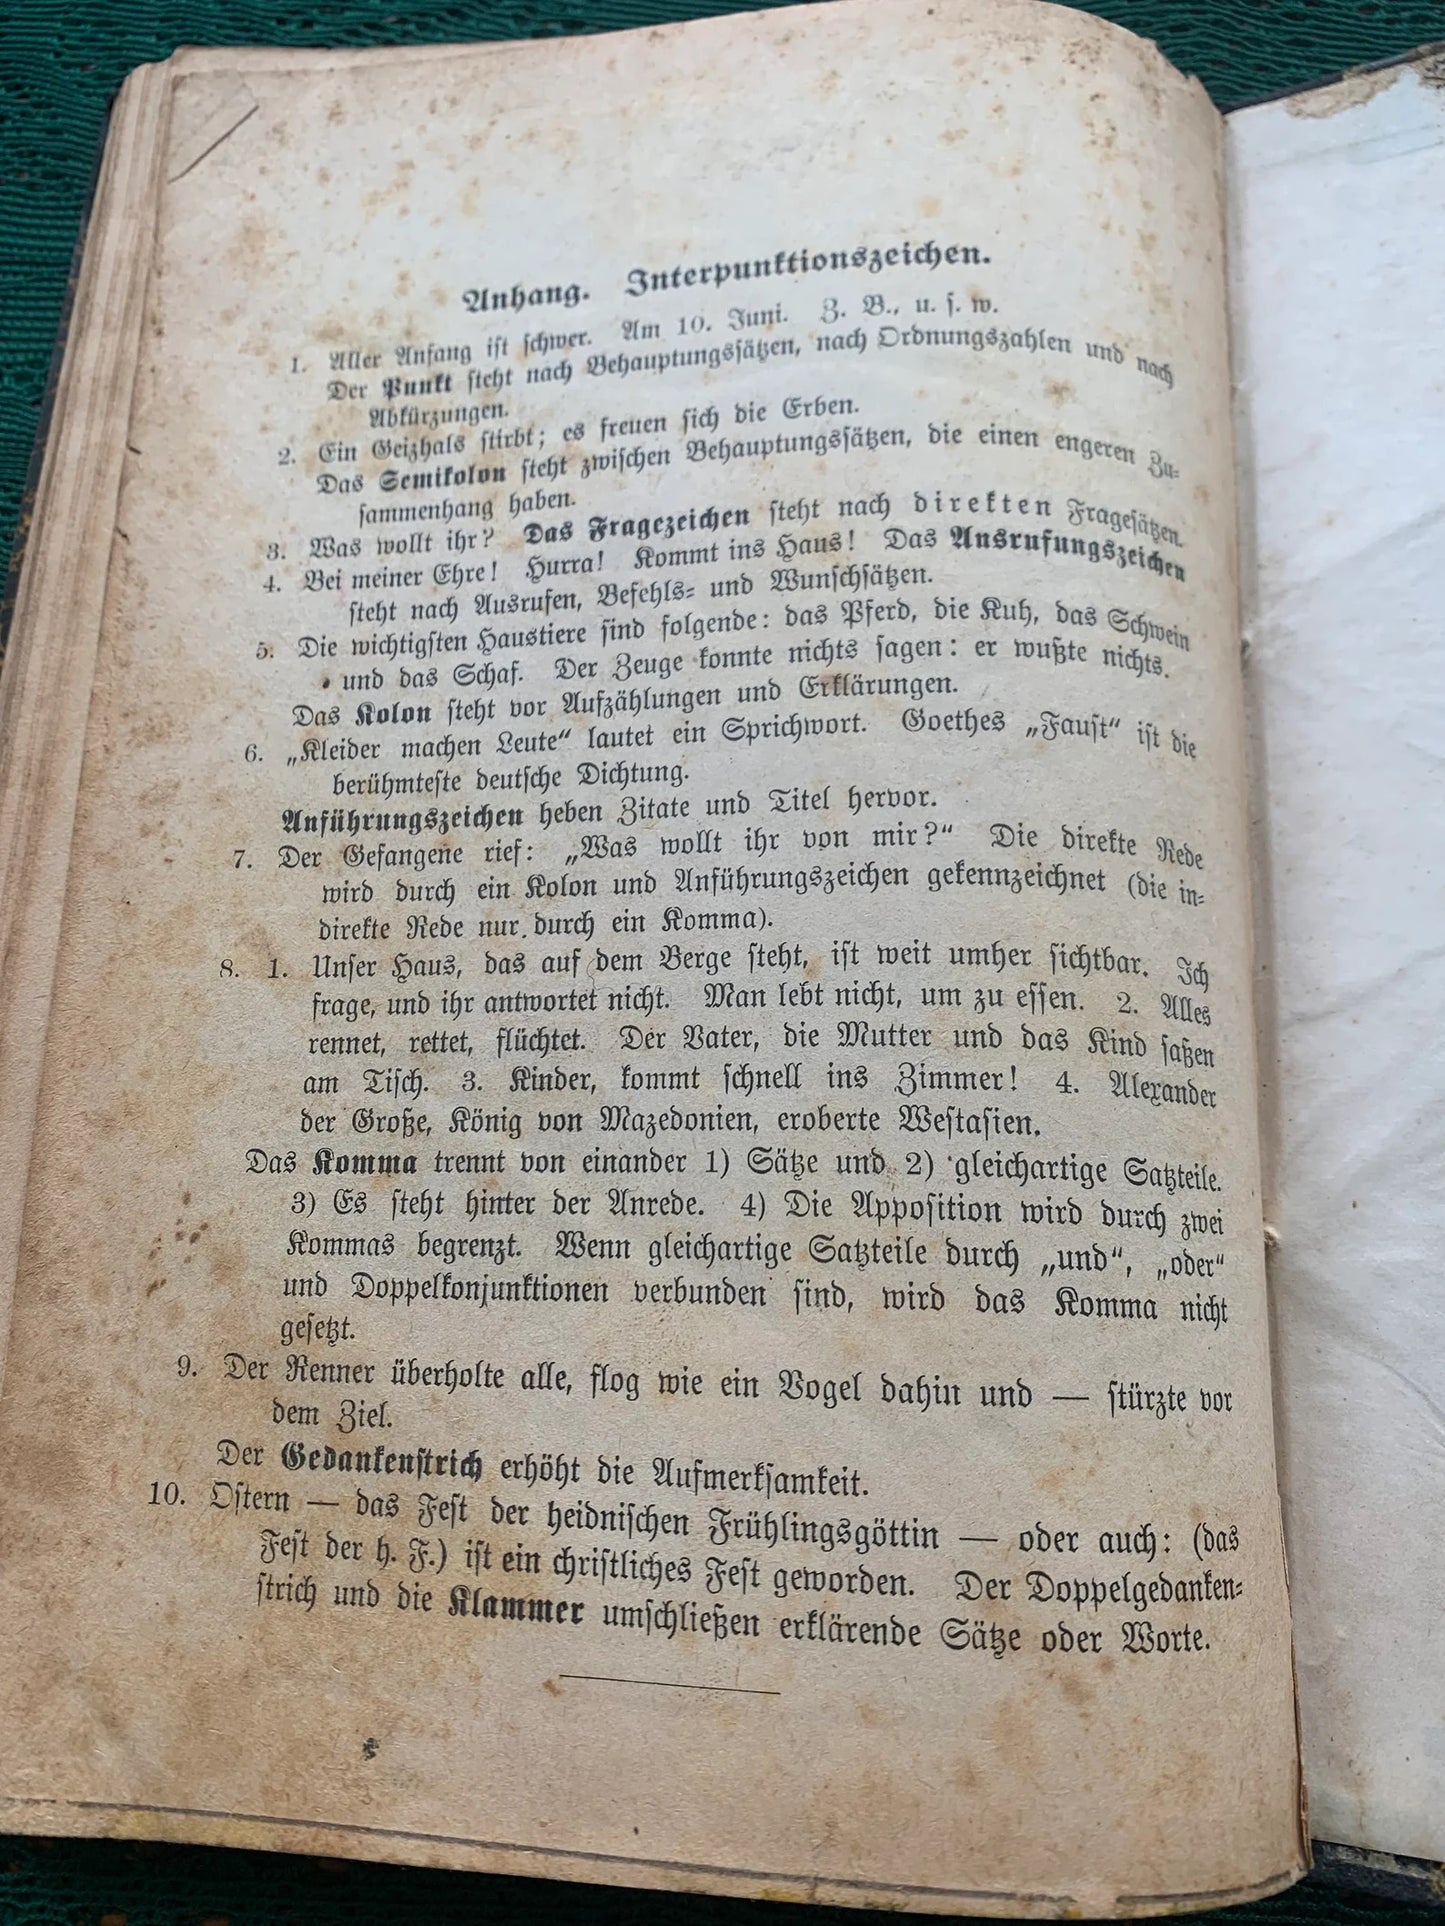 Antique Book from 1924 in German - Sprachlehre des Deutichen als fremdiprache - collectible book